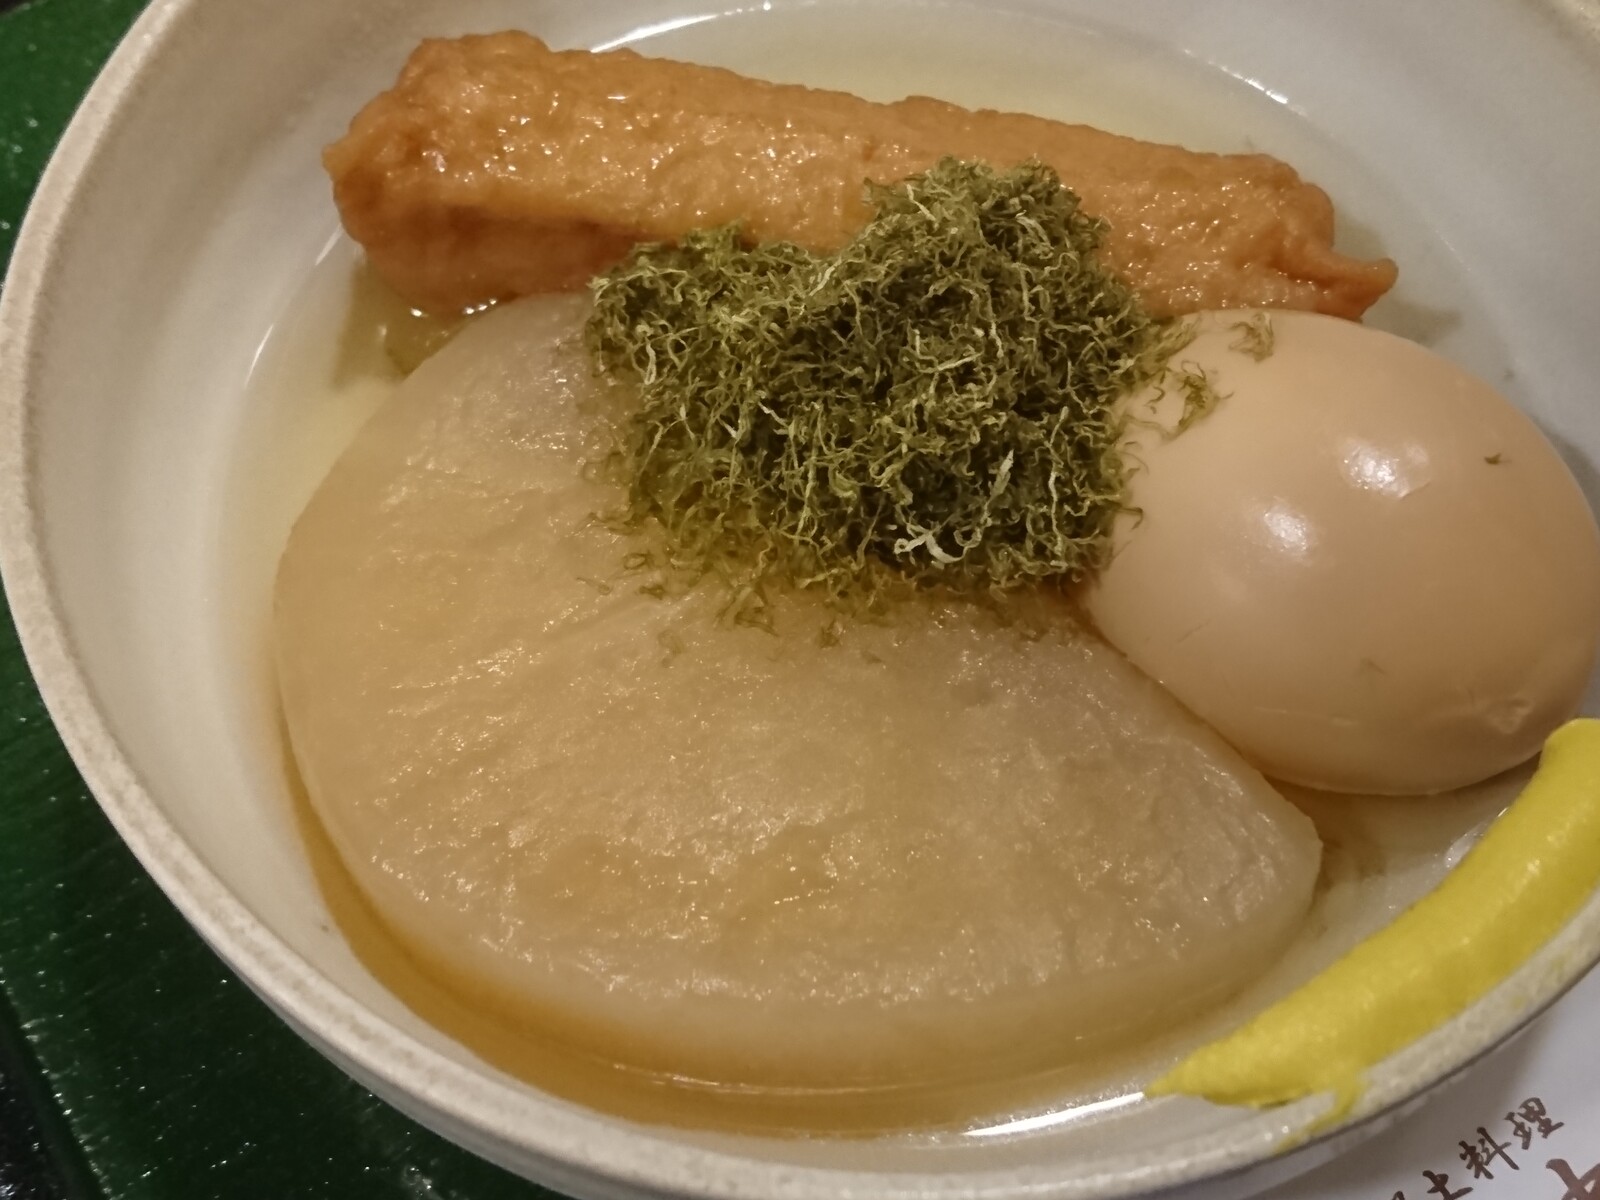 越中茶屋のバイ貝の煮込みと富山おでんで昼呑み 富山で飲み食い おぼえ書きブログ